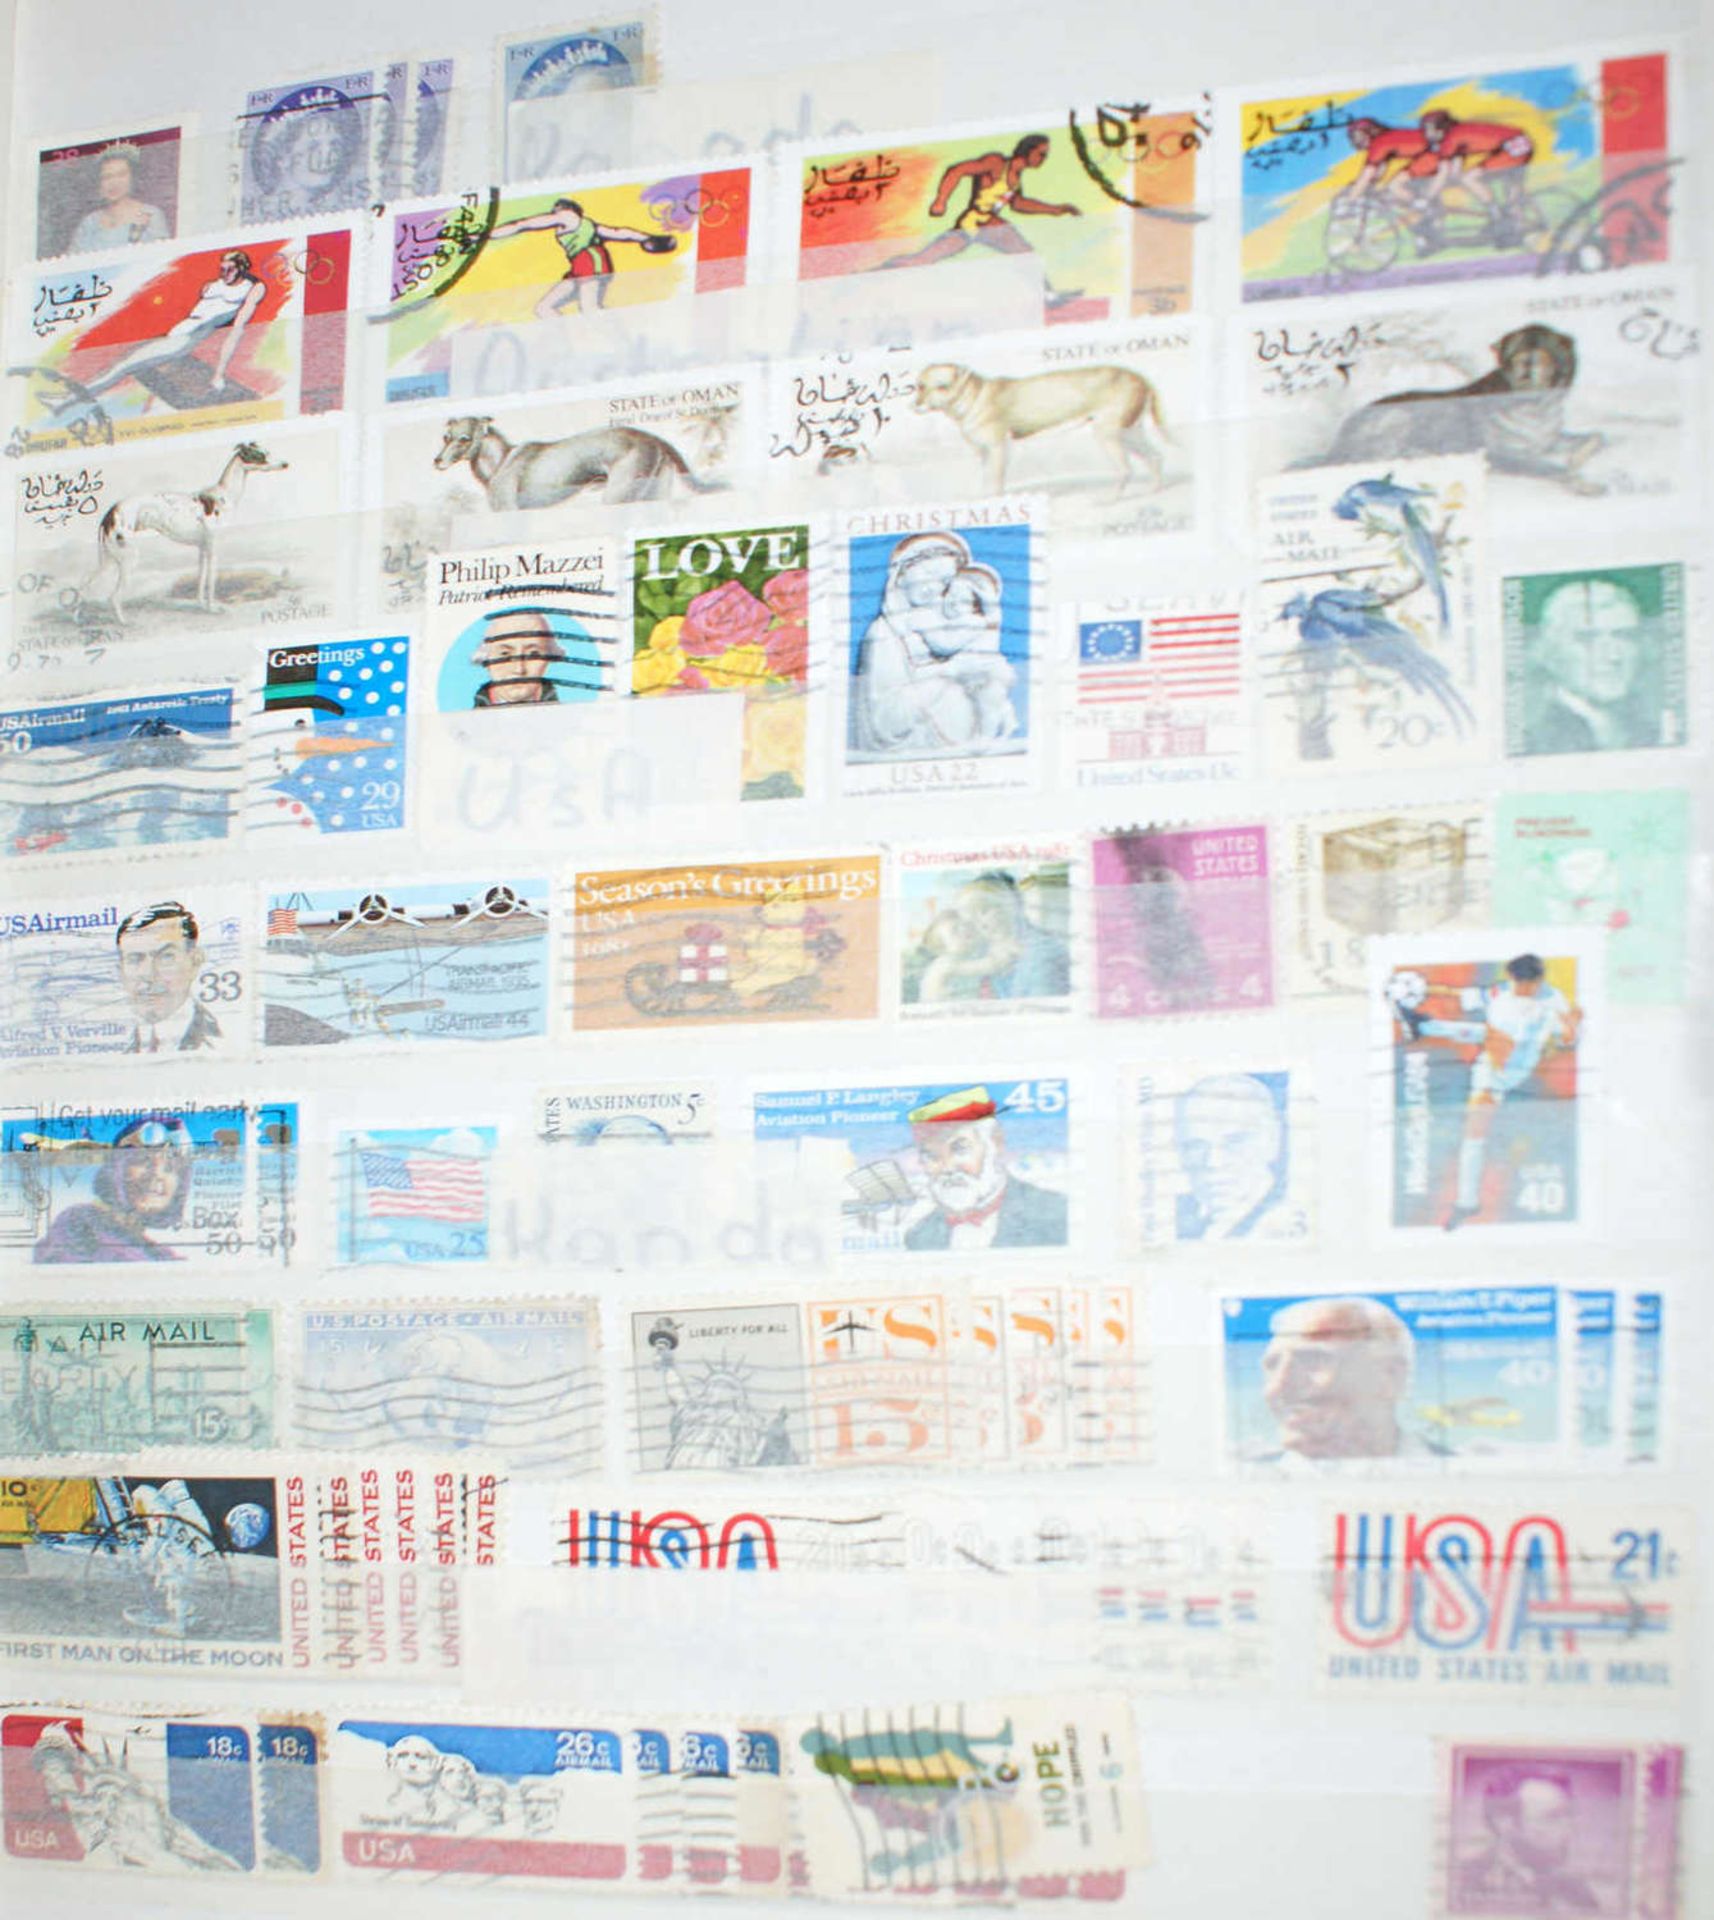 Europa - Briefmarken Dubletten Konvolut, bestehend aus 9 Alben, teilweise schlecht gelagert. - Image 4 of 5